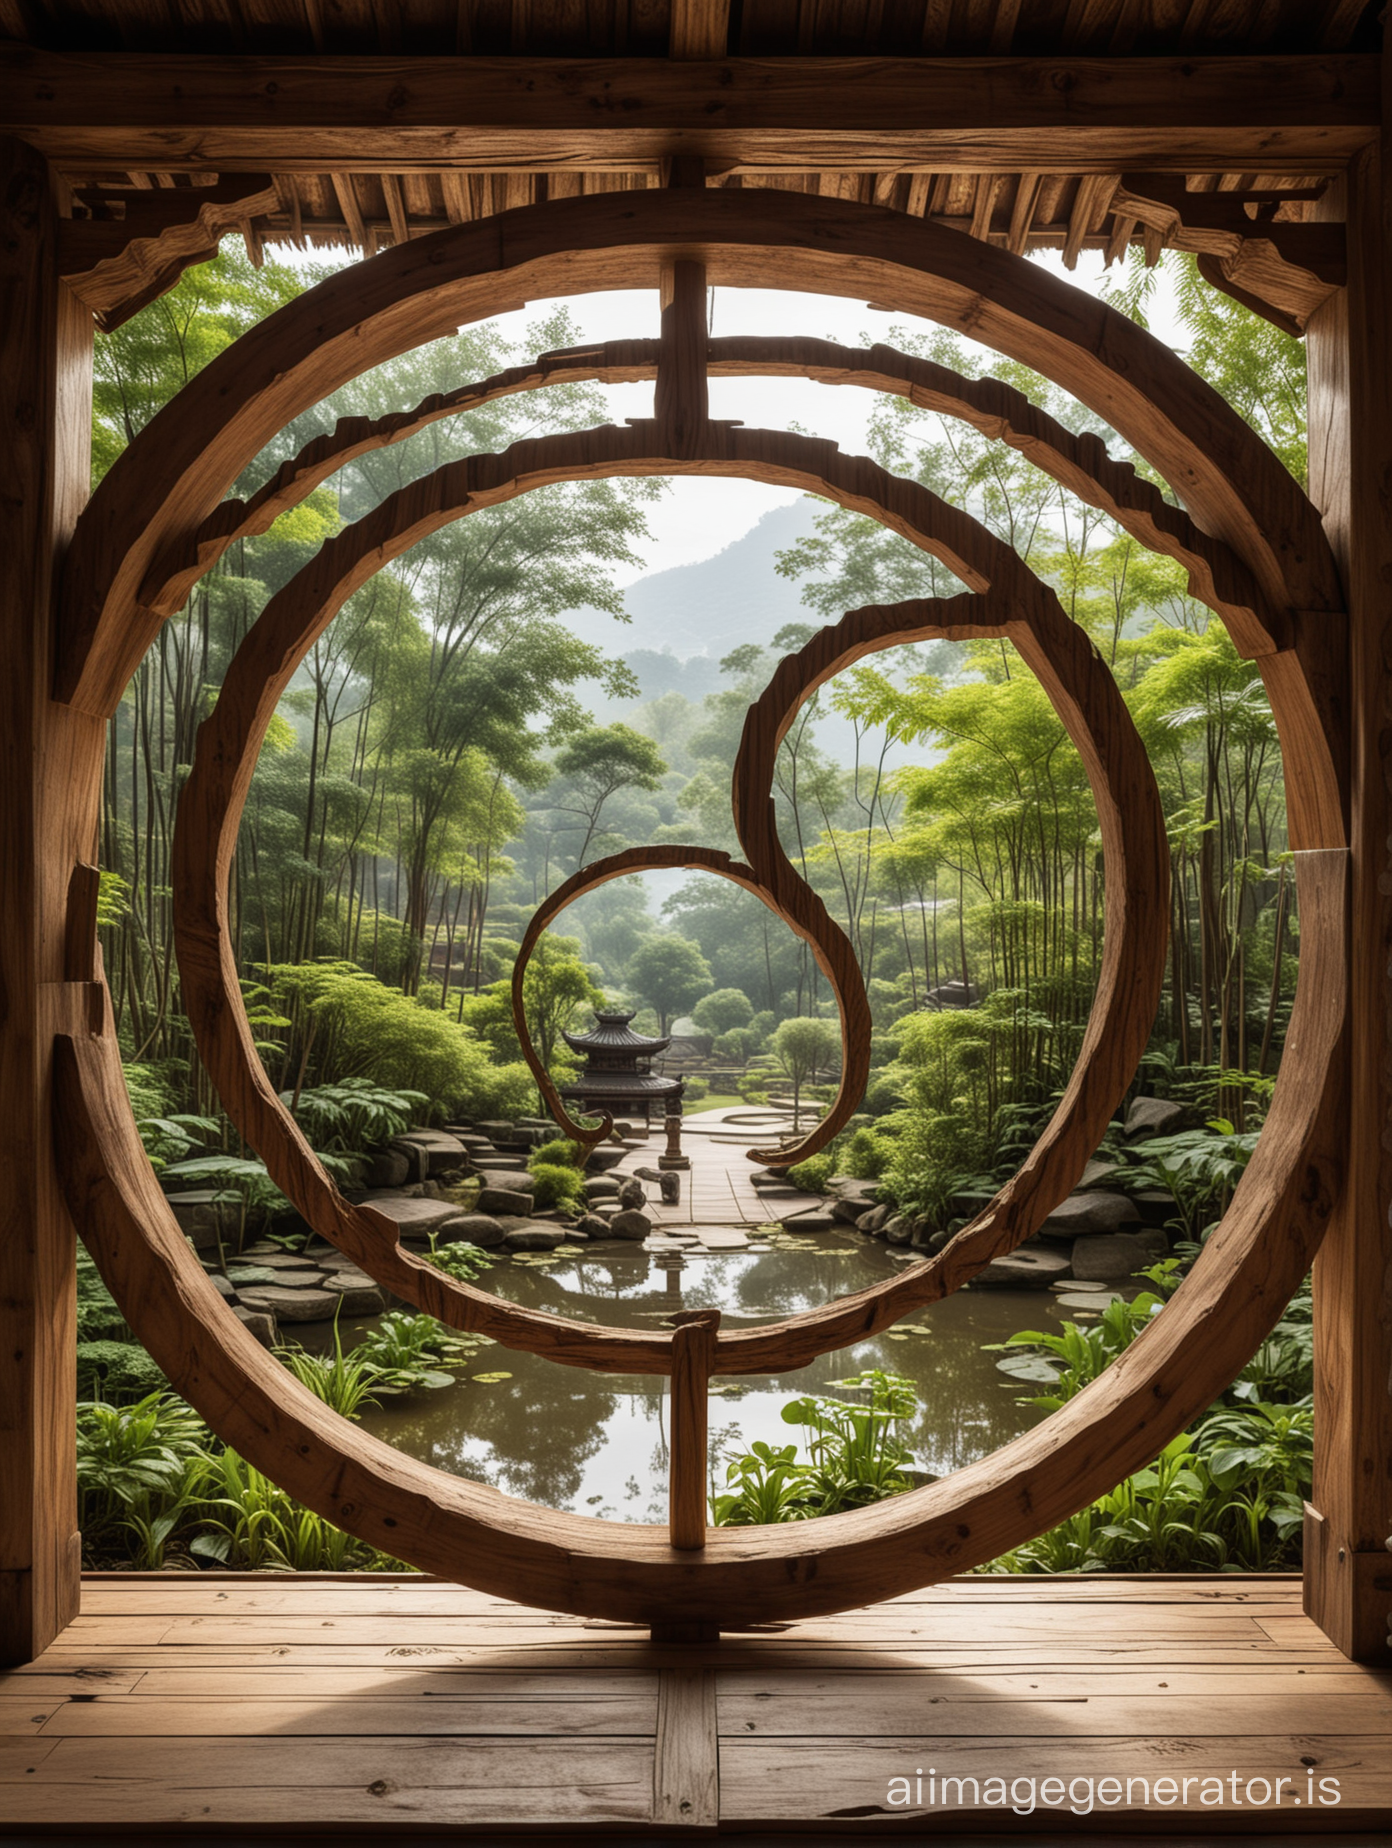 Ying et yang transparents à travers on vois 
Un temple bouddhiste végétal en bois et avec des jardins suspendus. Image réaliste et magique à la fois 